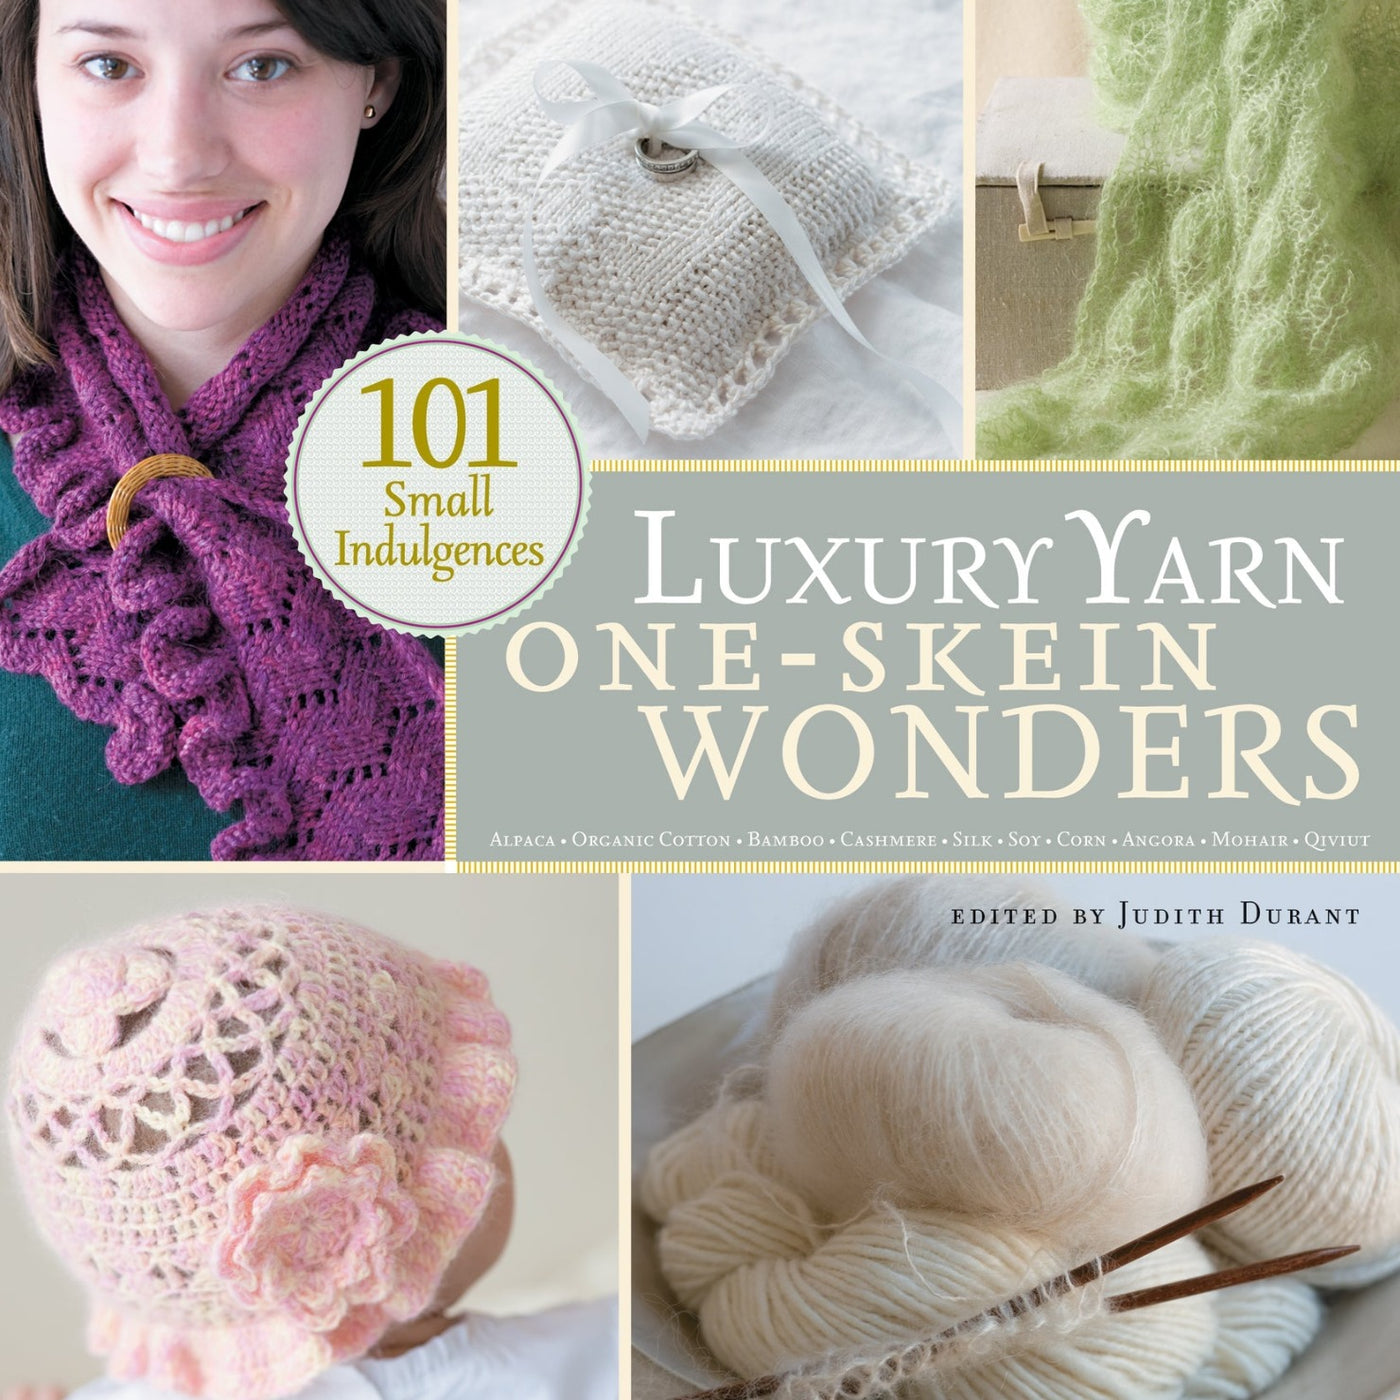 Luxury Yarn One-Skein Wonders by Judith Durant